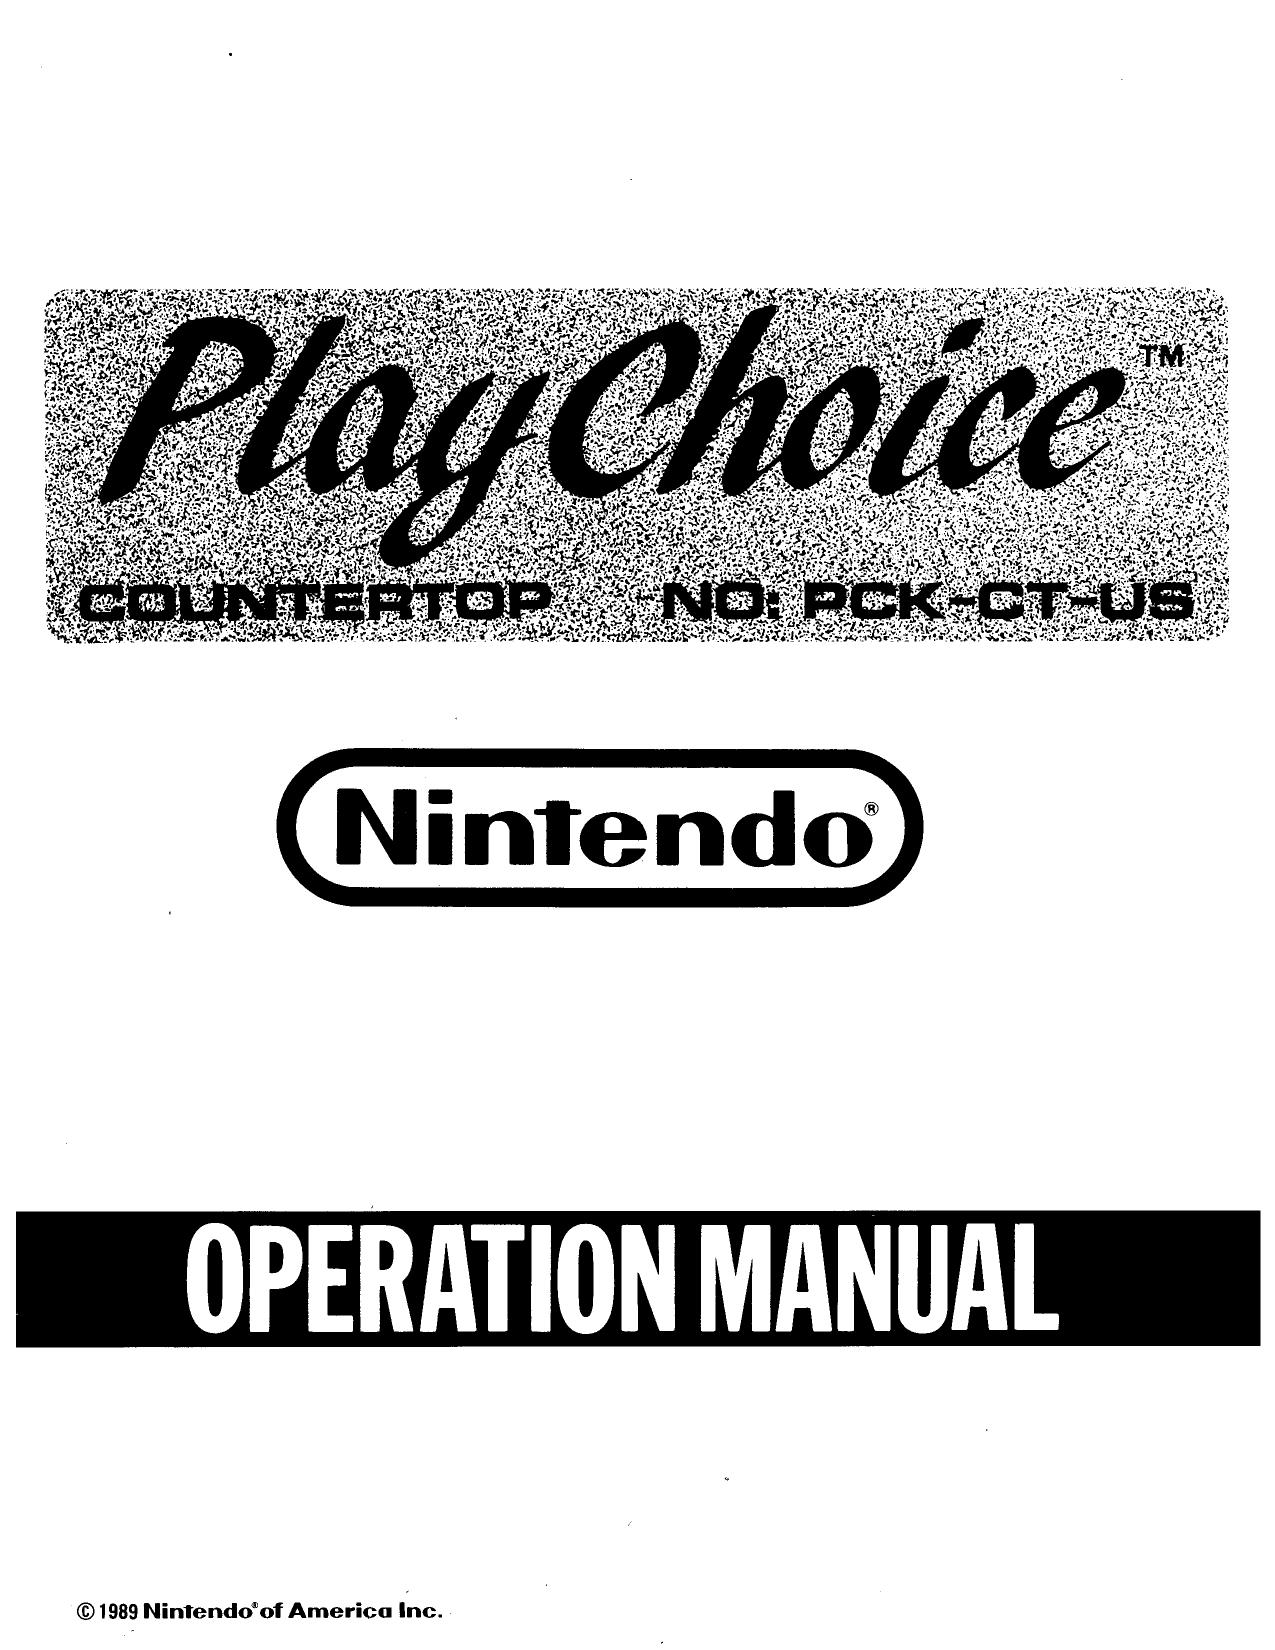 Nintendo playchoice countertop